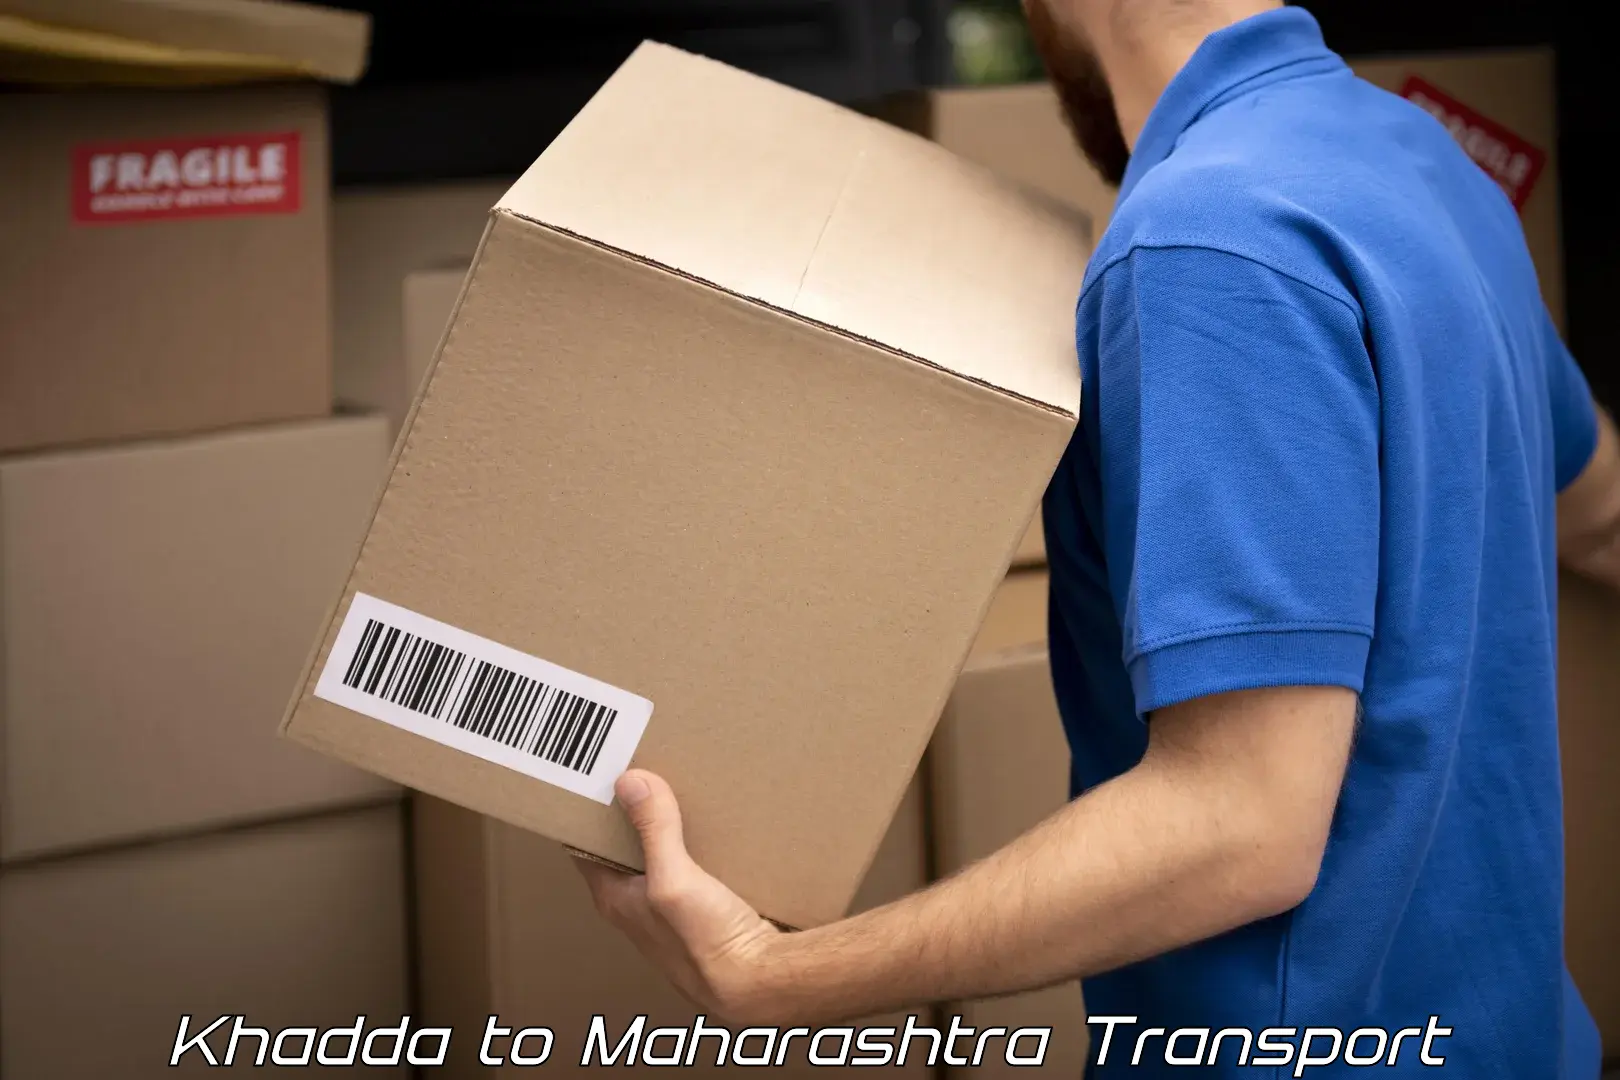 Container transport service Khadda to Maharashtra